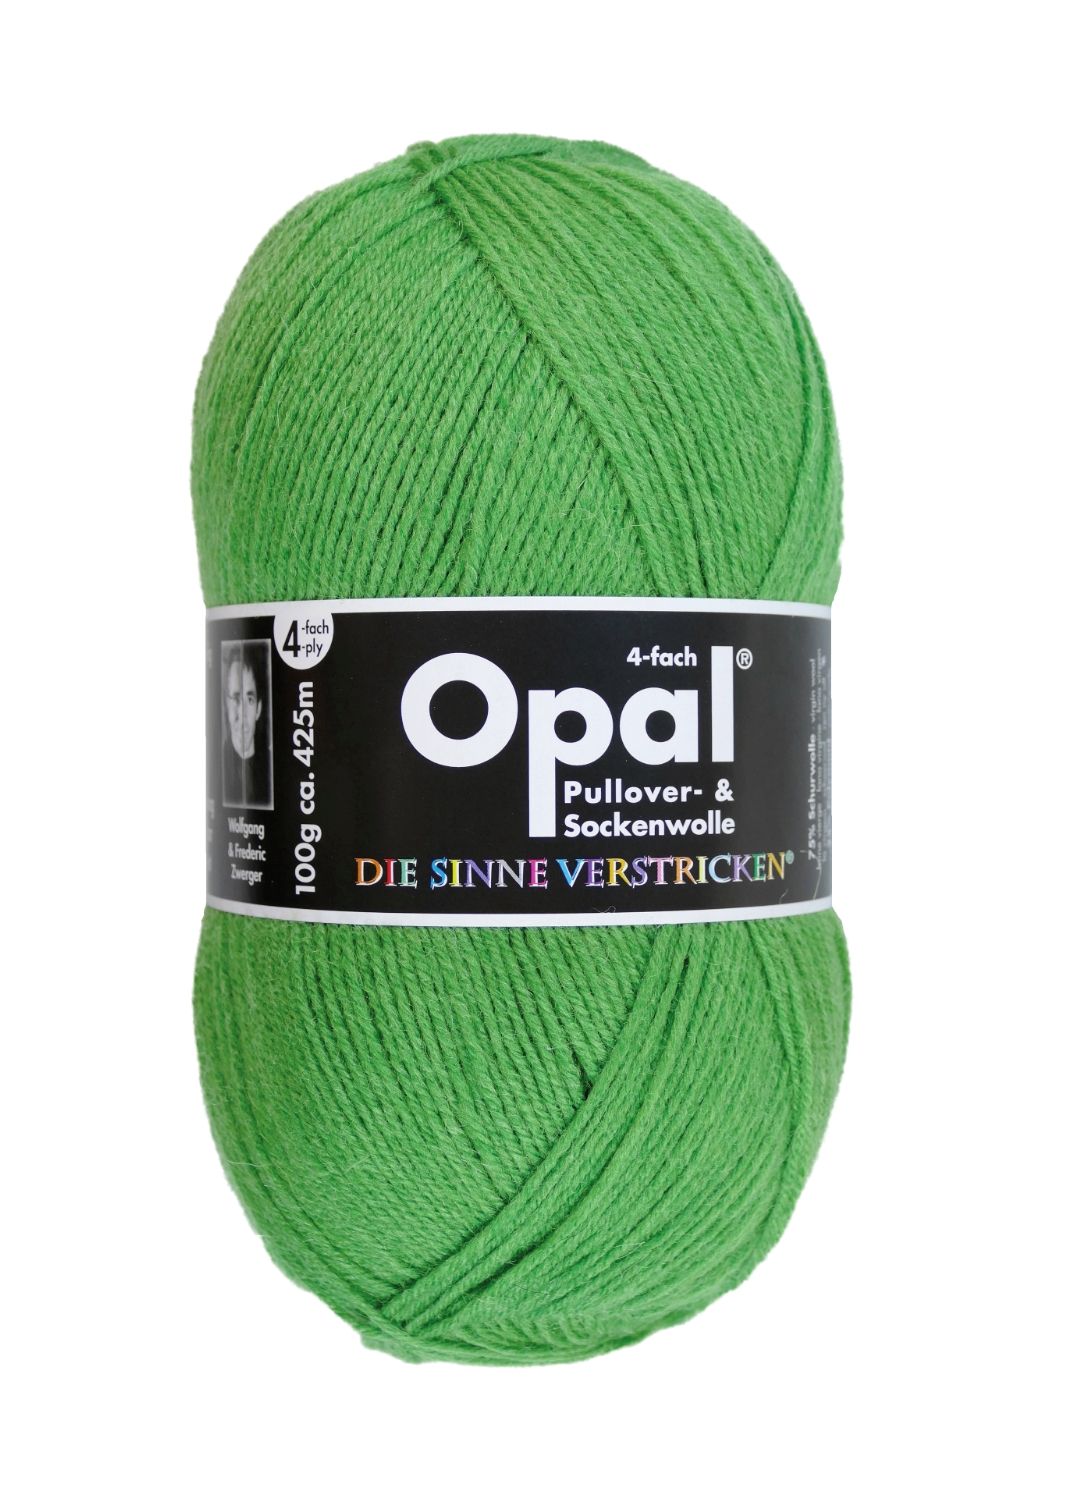 100 g Opal uni 4 fach Sockenwolle Strumpfwolle stricken Farbauswahl 